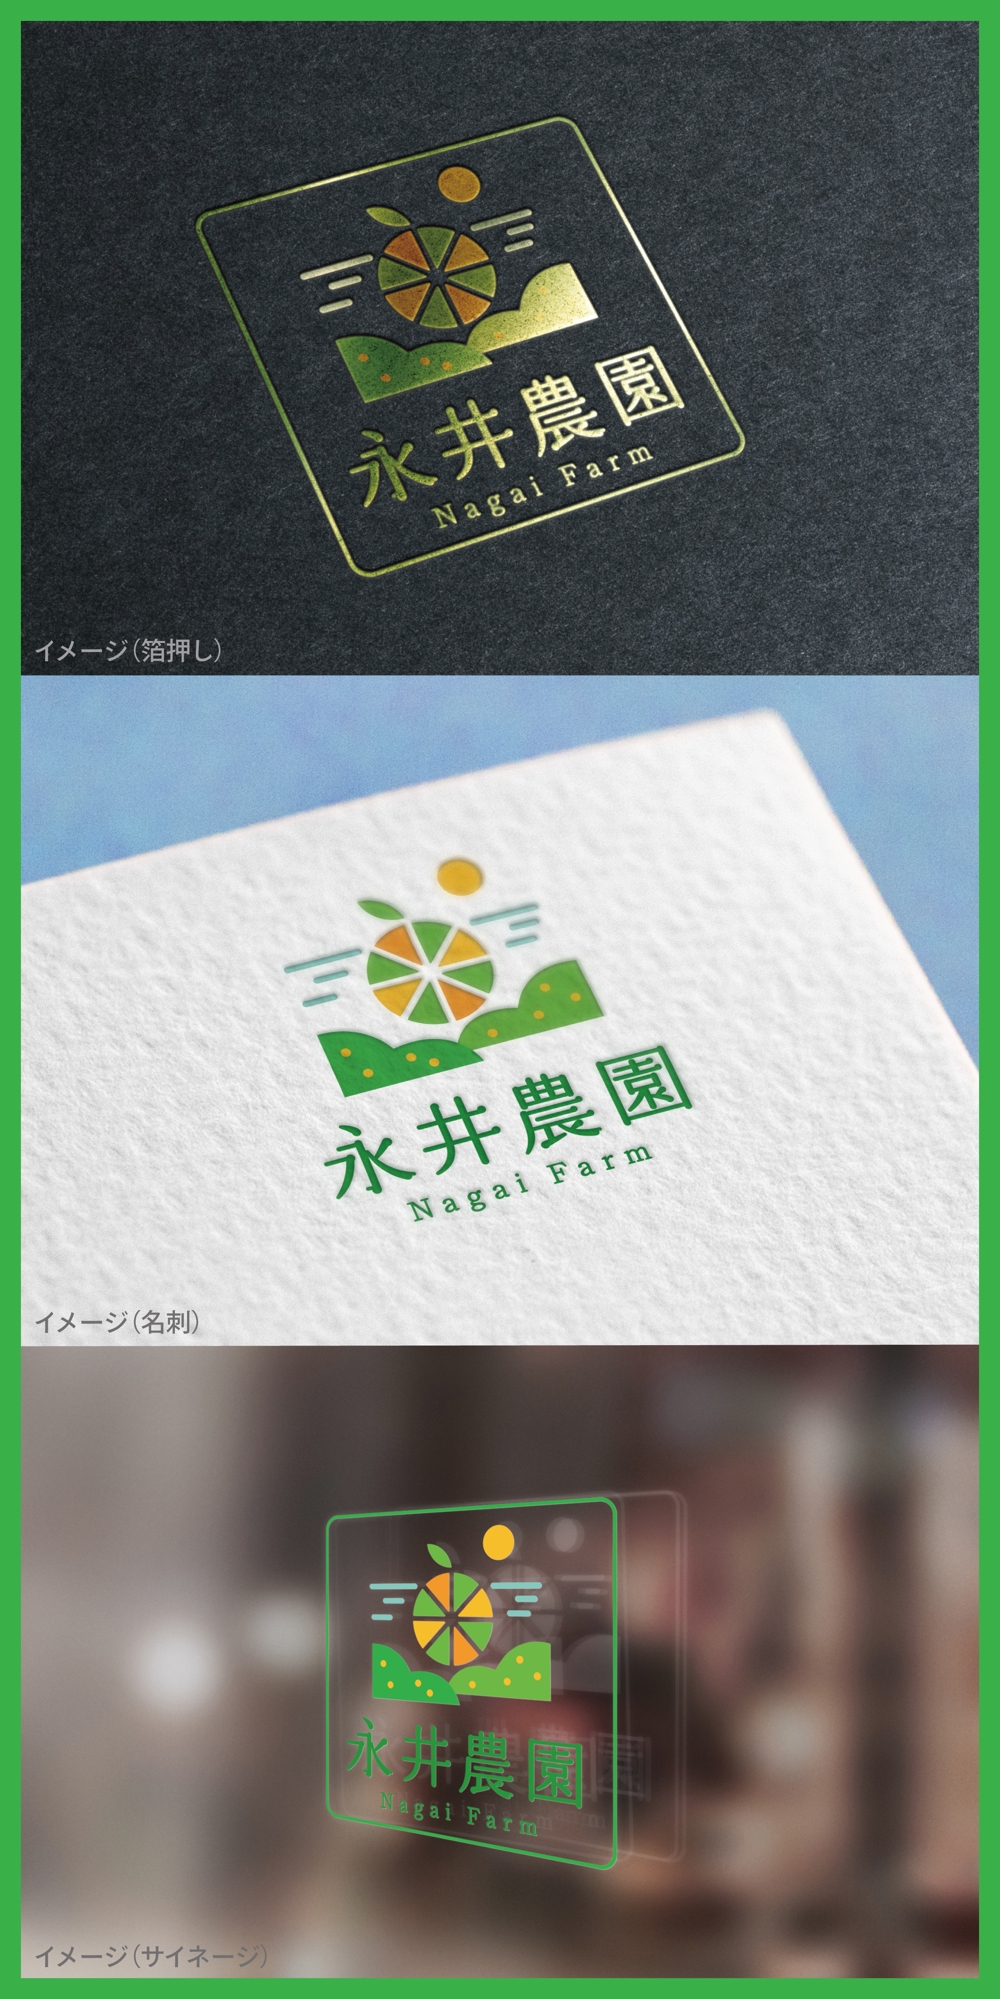 永井農園_logo01_01.jpg